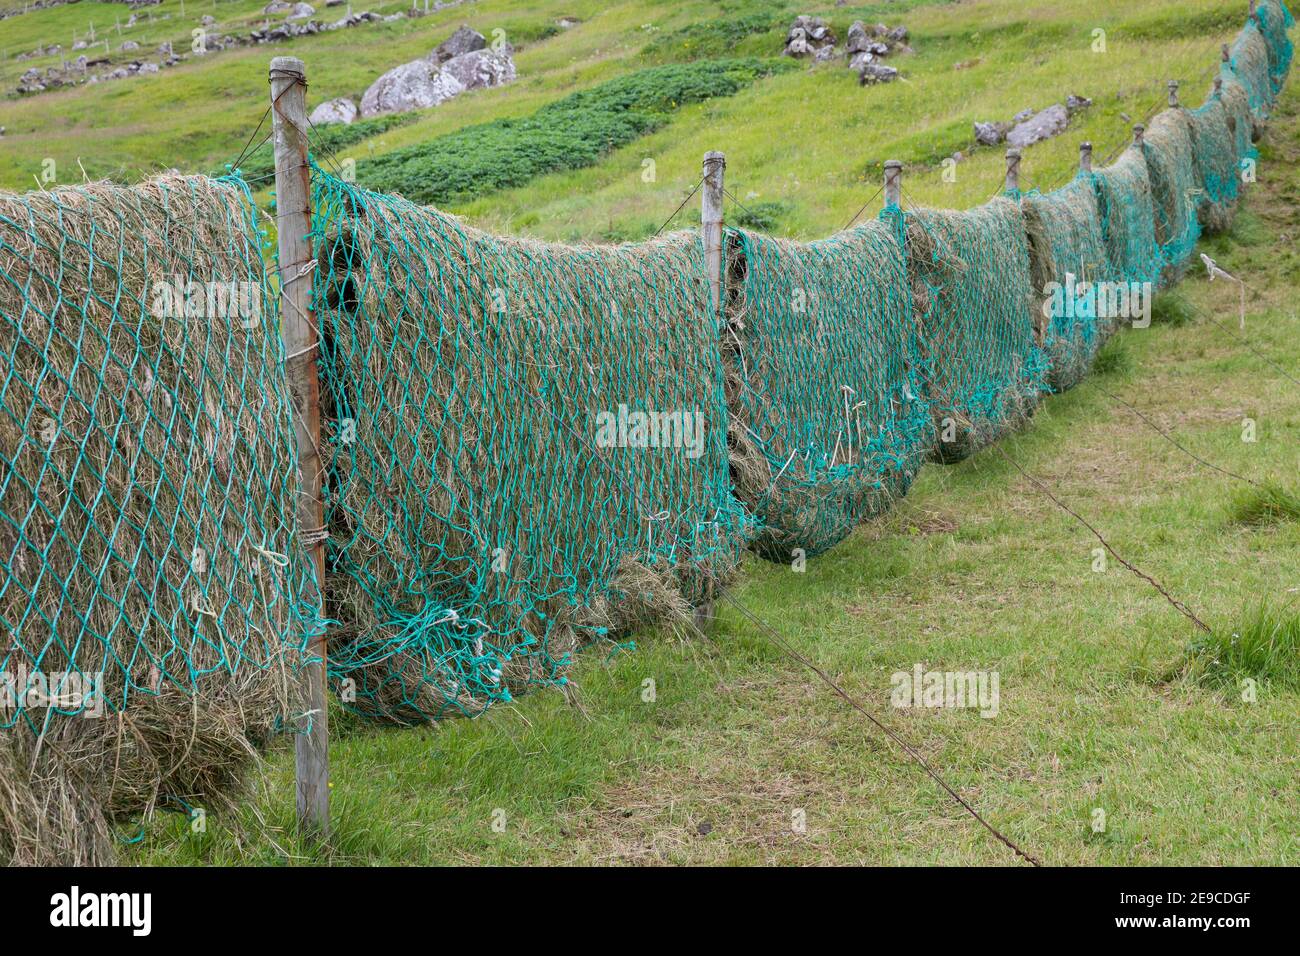 Heu trocknen in alten Fischernetzen, Heu machen, Heu, Färöer, Färöer-Inseln, Färöer Inseln, fieno, fieno, fieno, Faroe, Isole Faoe, Les Îles Foto Stock